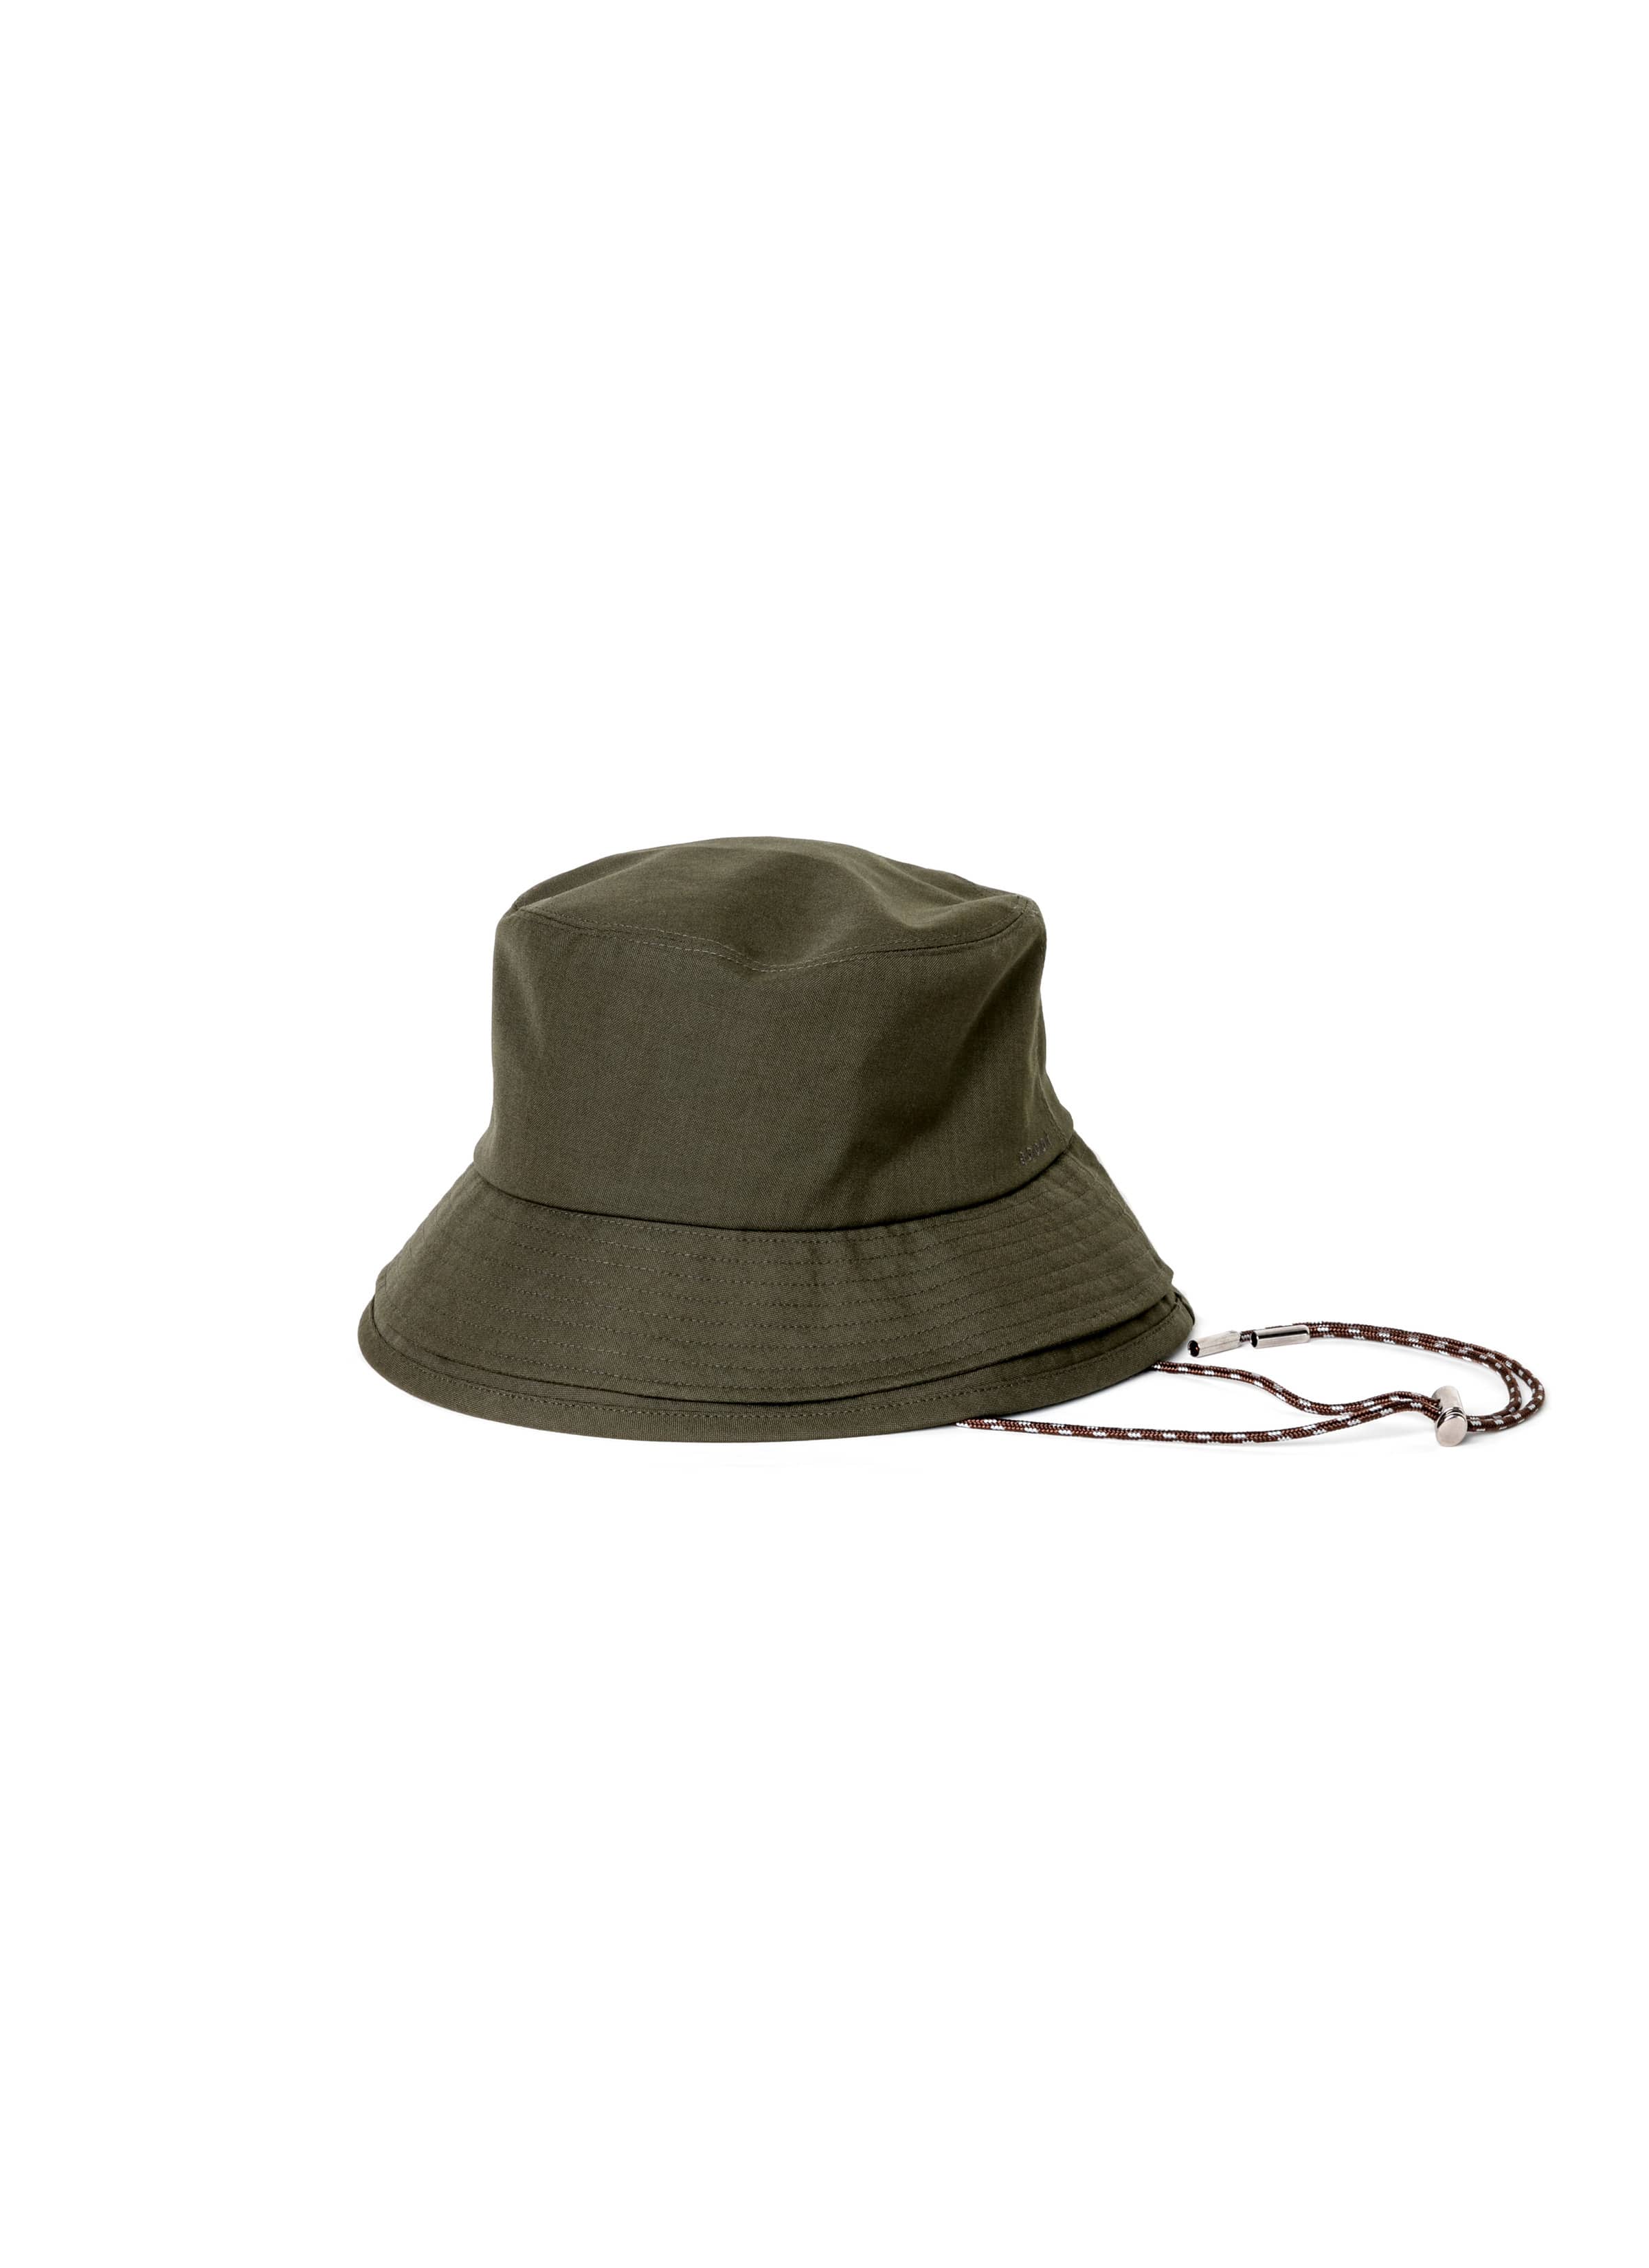 Double Brim Hat / Suiting 詳細画像 KHAKI 1